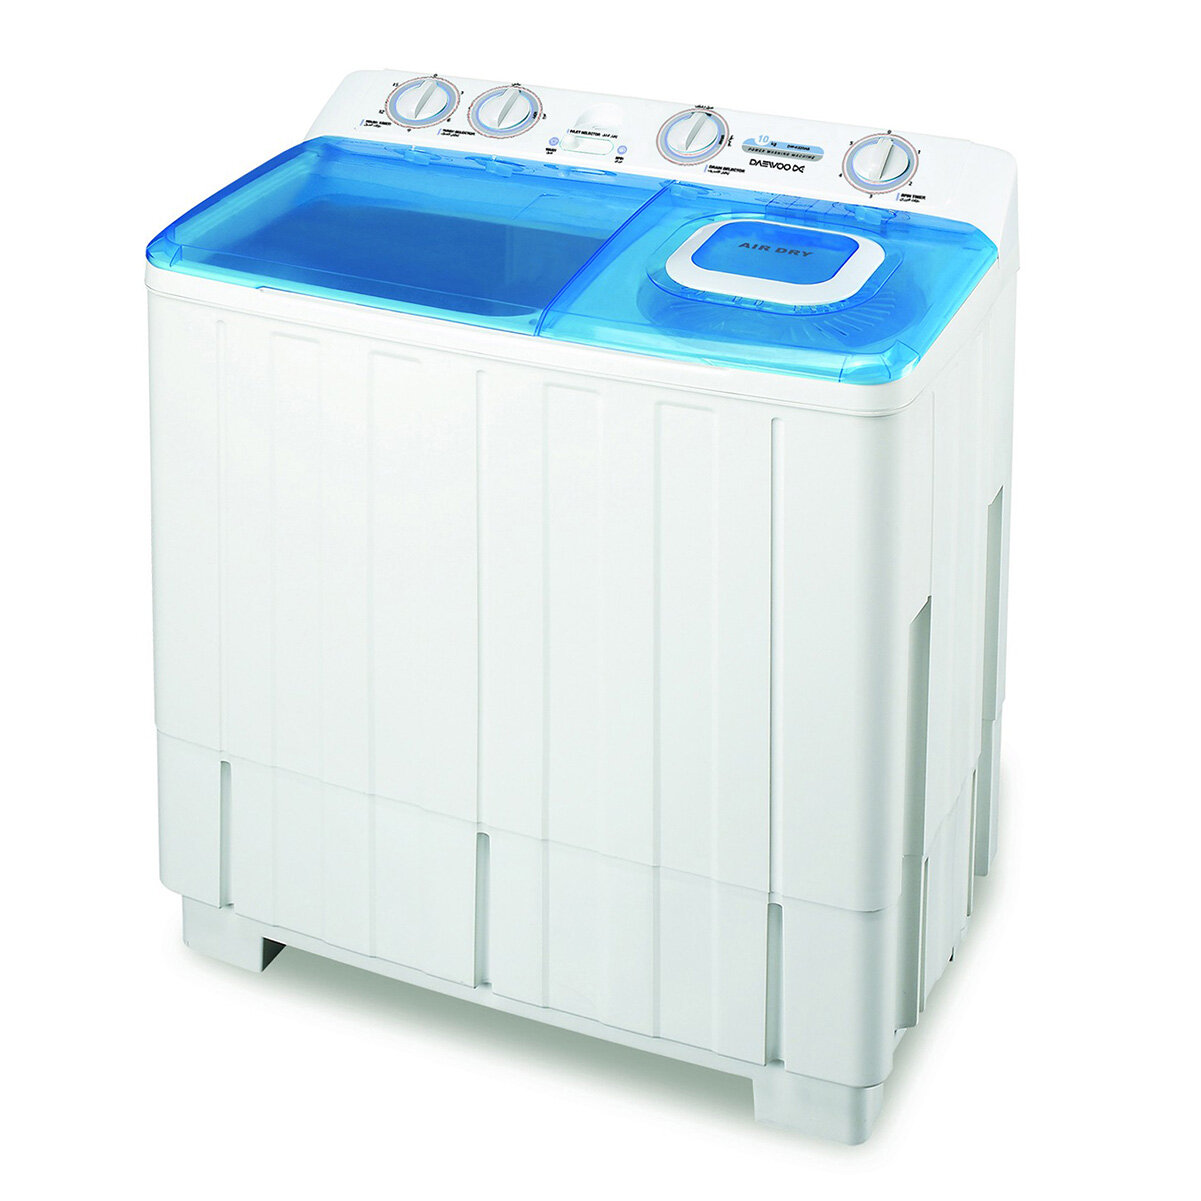 Máy giặt Daewoo khối lượng 6kg